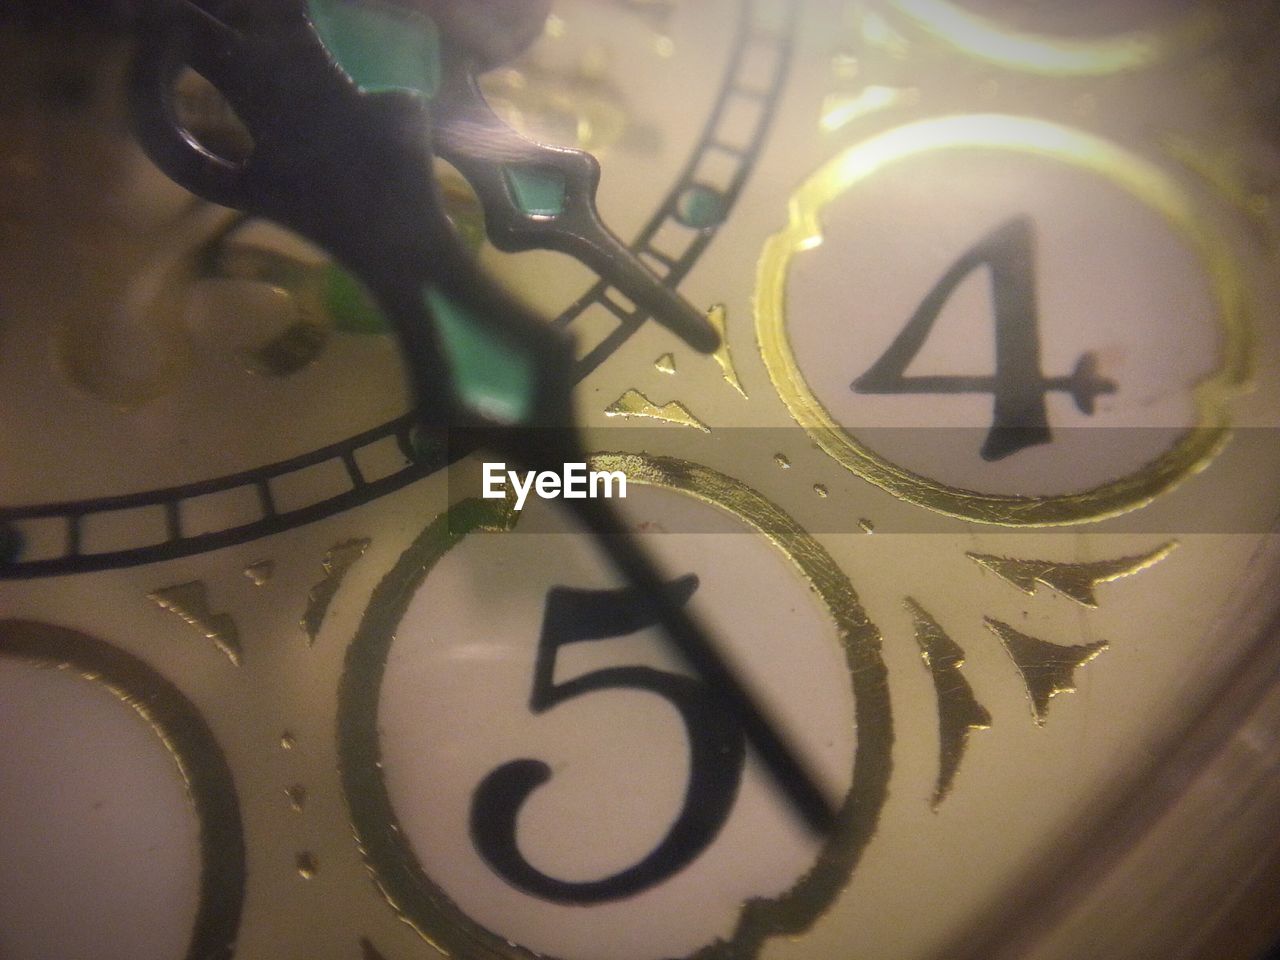 Detail of clock